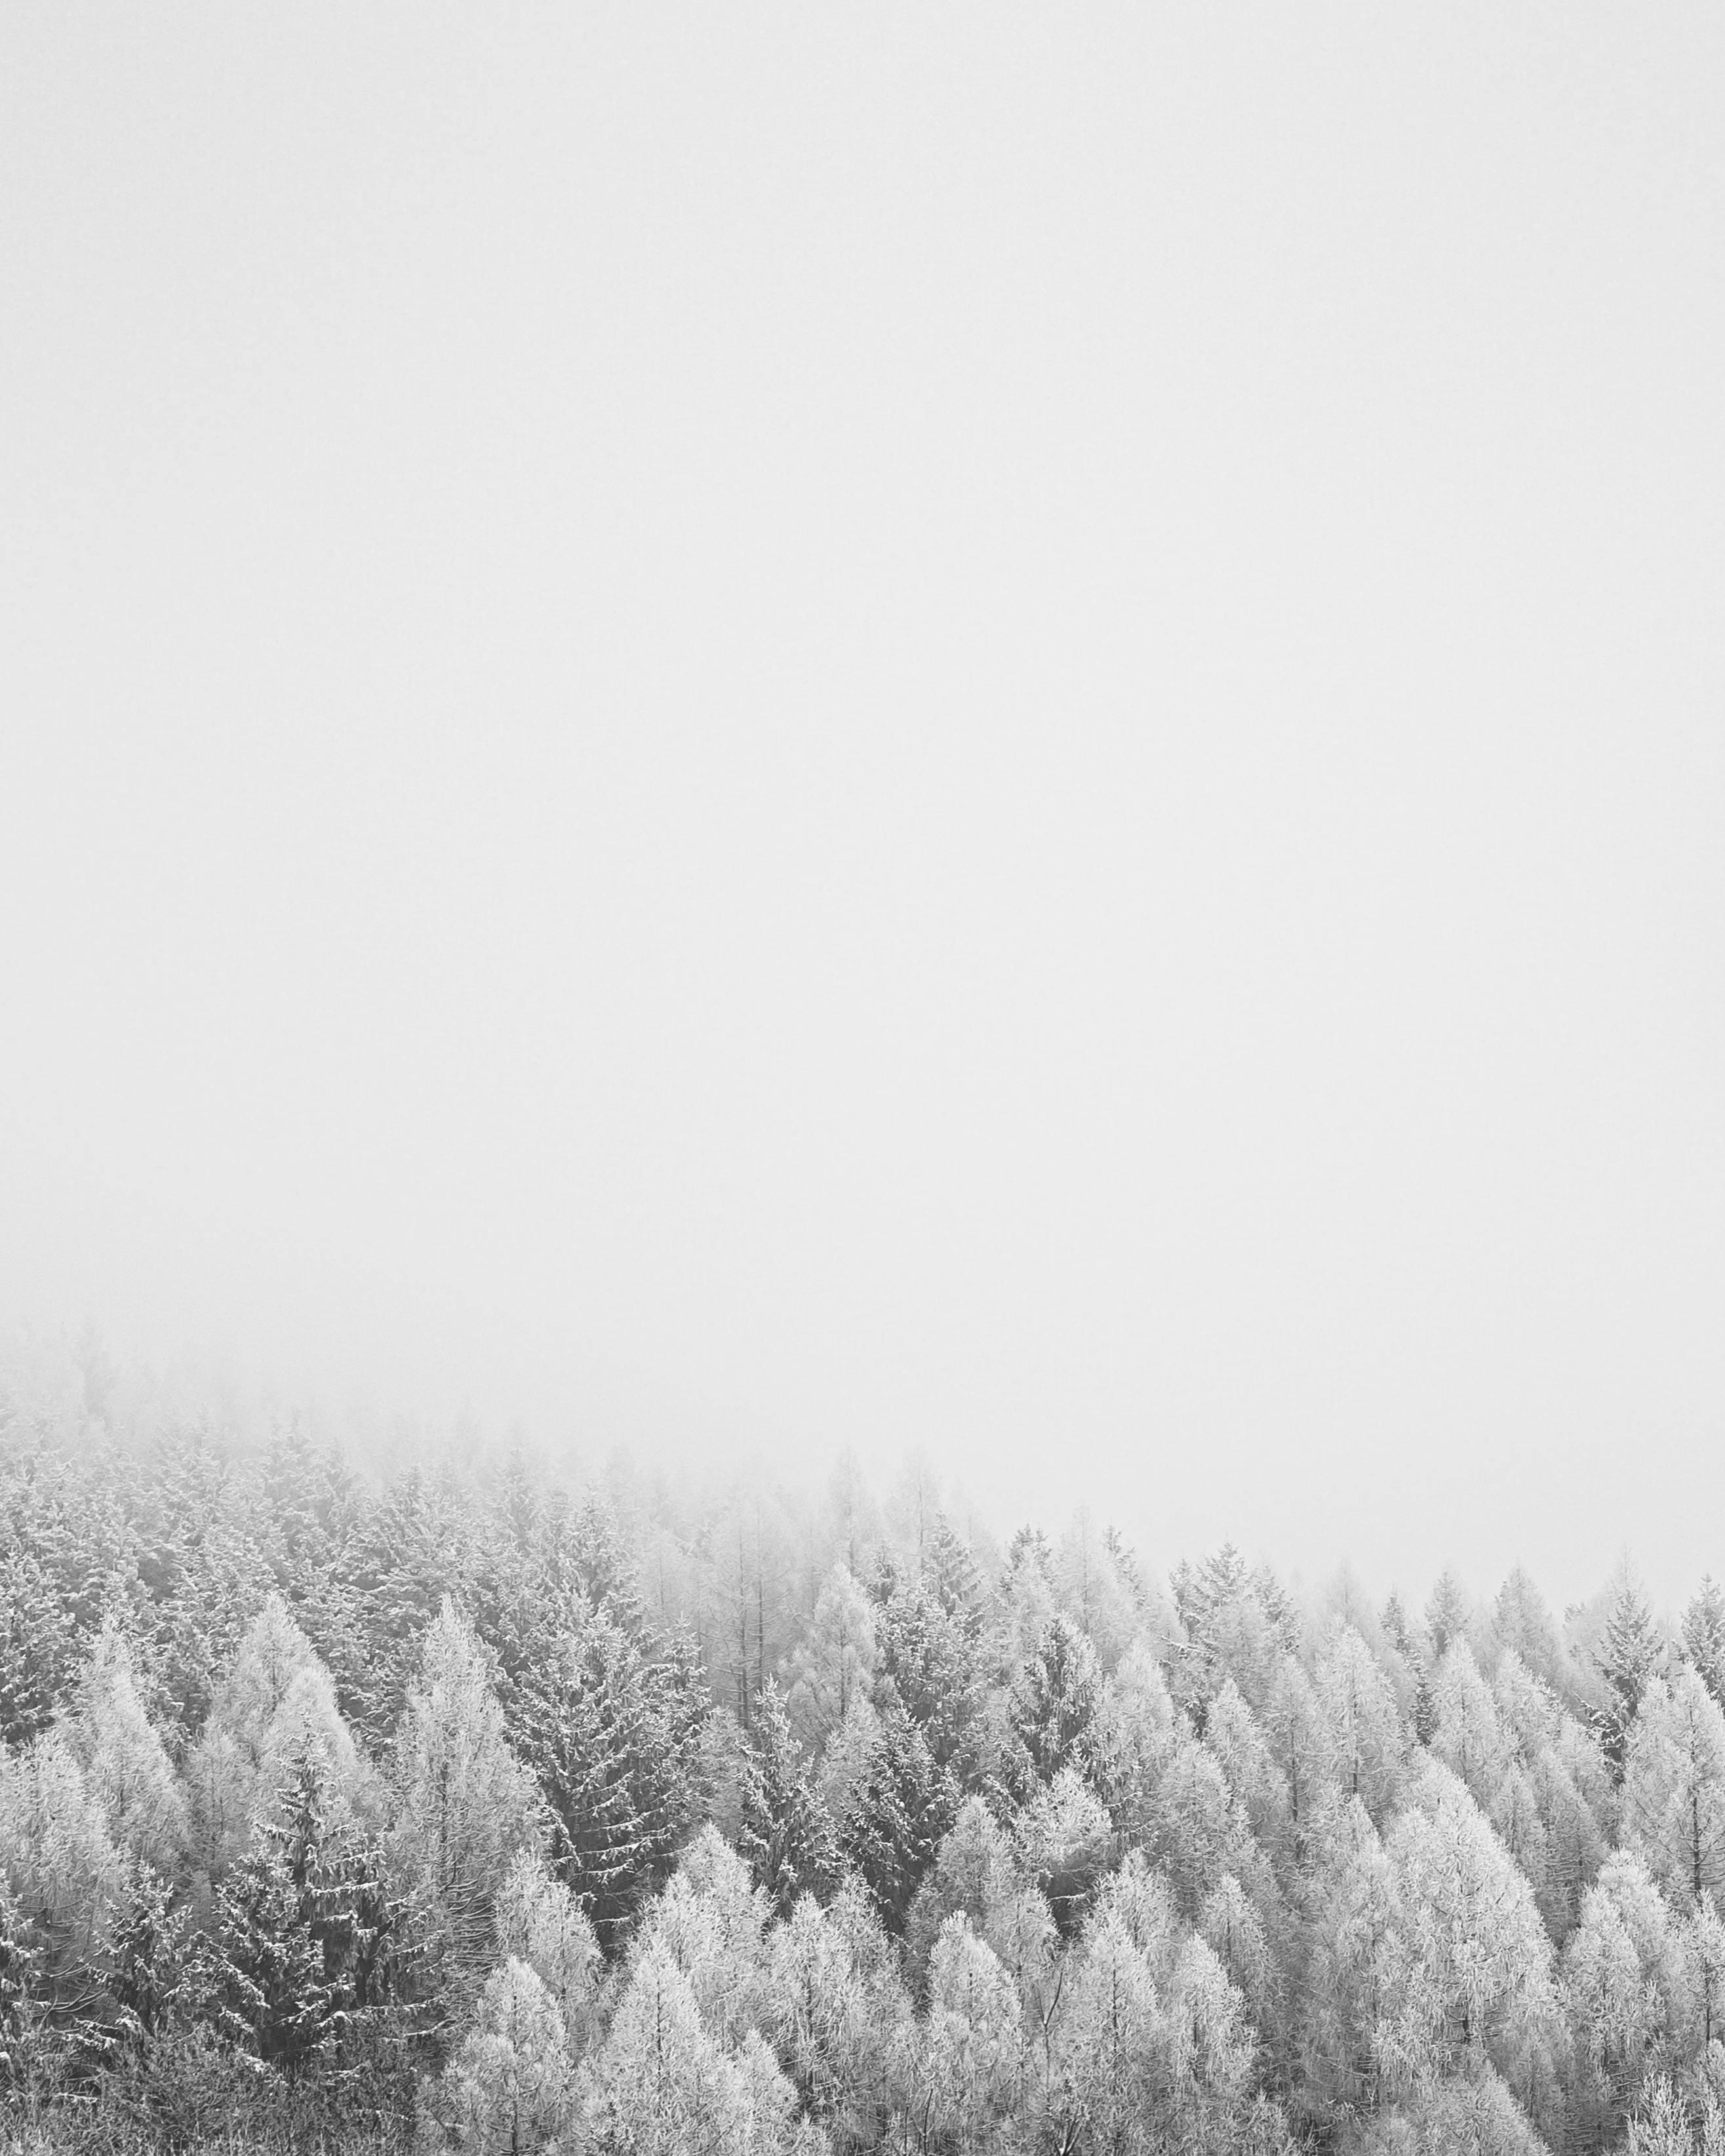 Ảnh nền tuyết trắng sẽ đưa bạn đến với cảm giác yên bình và tĩnh lặng. Hãy xem hình ảnh để tận hưởng cảm giác thư giãn và chìm đắm trong khung cảnh tuyết trắng cực kỳ đẹp mắt.